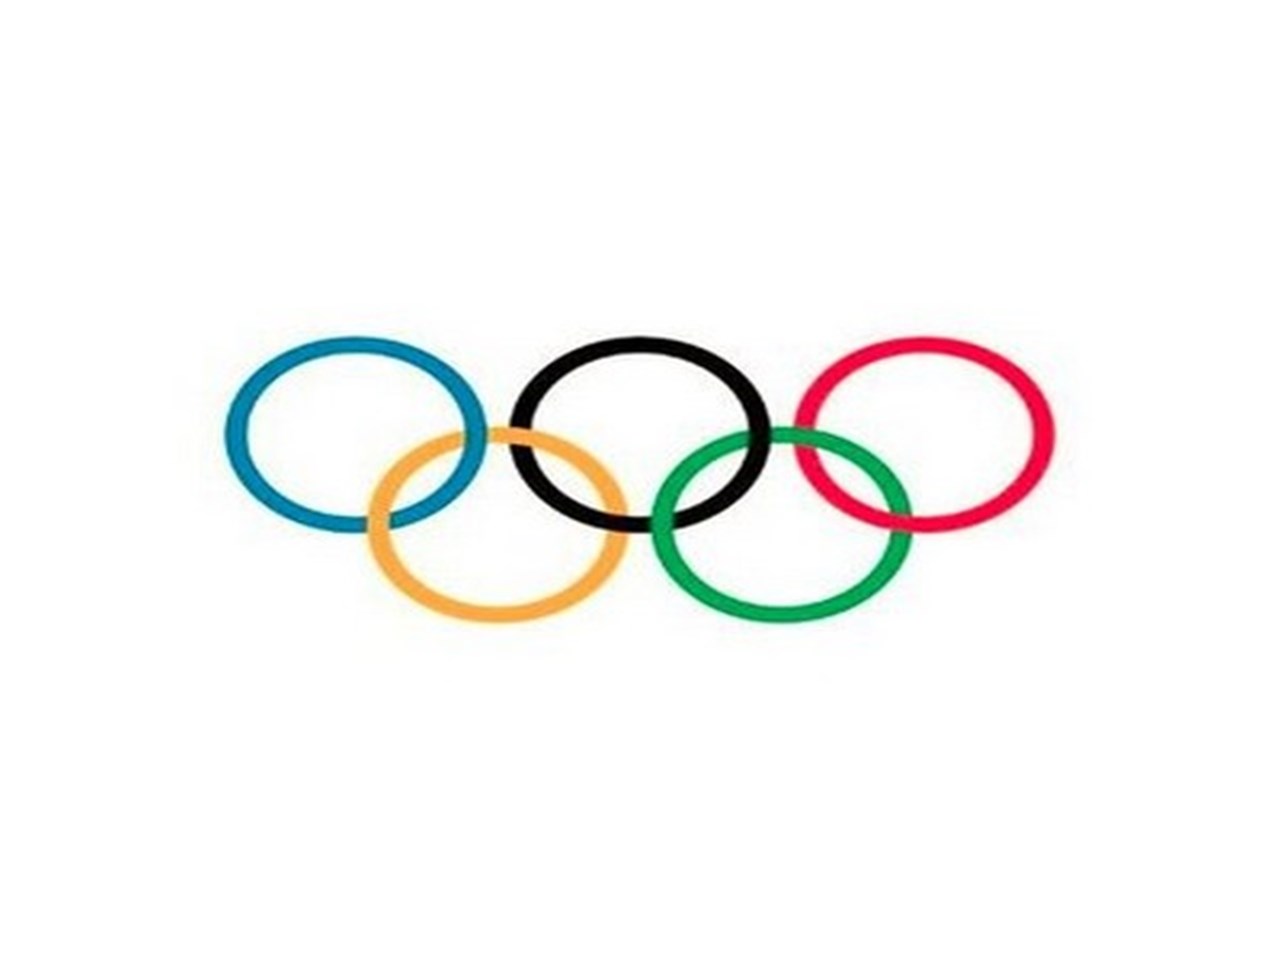 札幌市は、東京のスキャンダルを受けて、2034 年までオリンピック招致を延期する可能性があります。